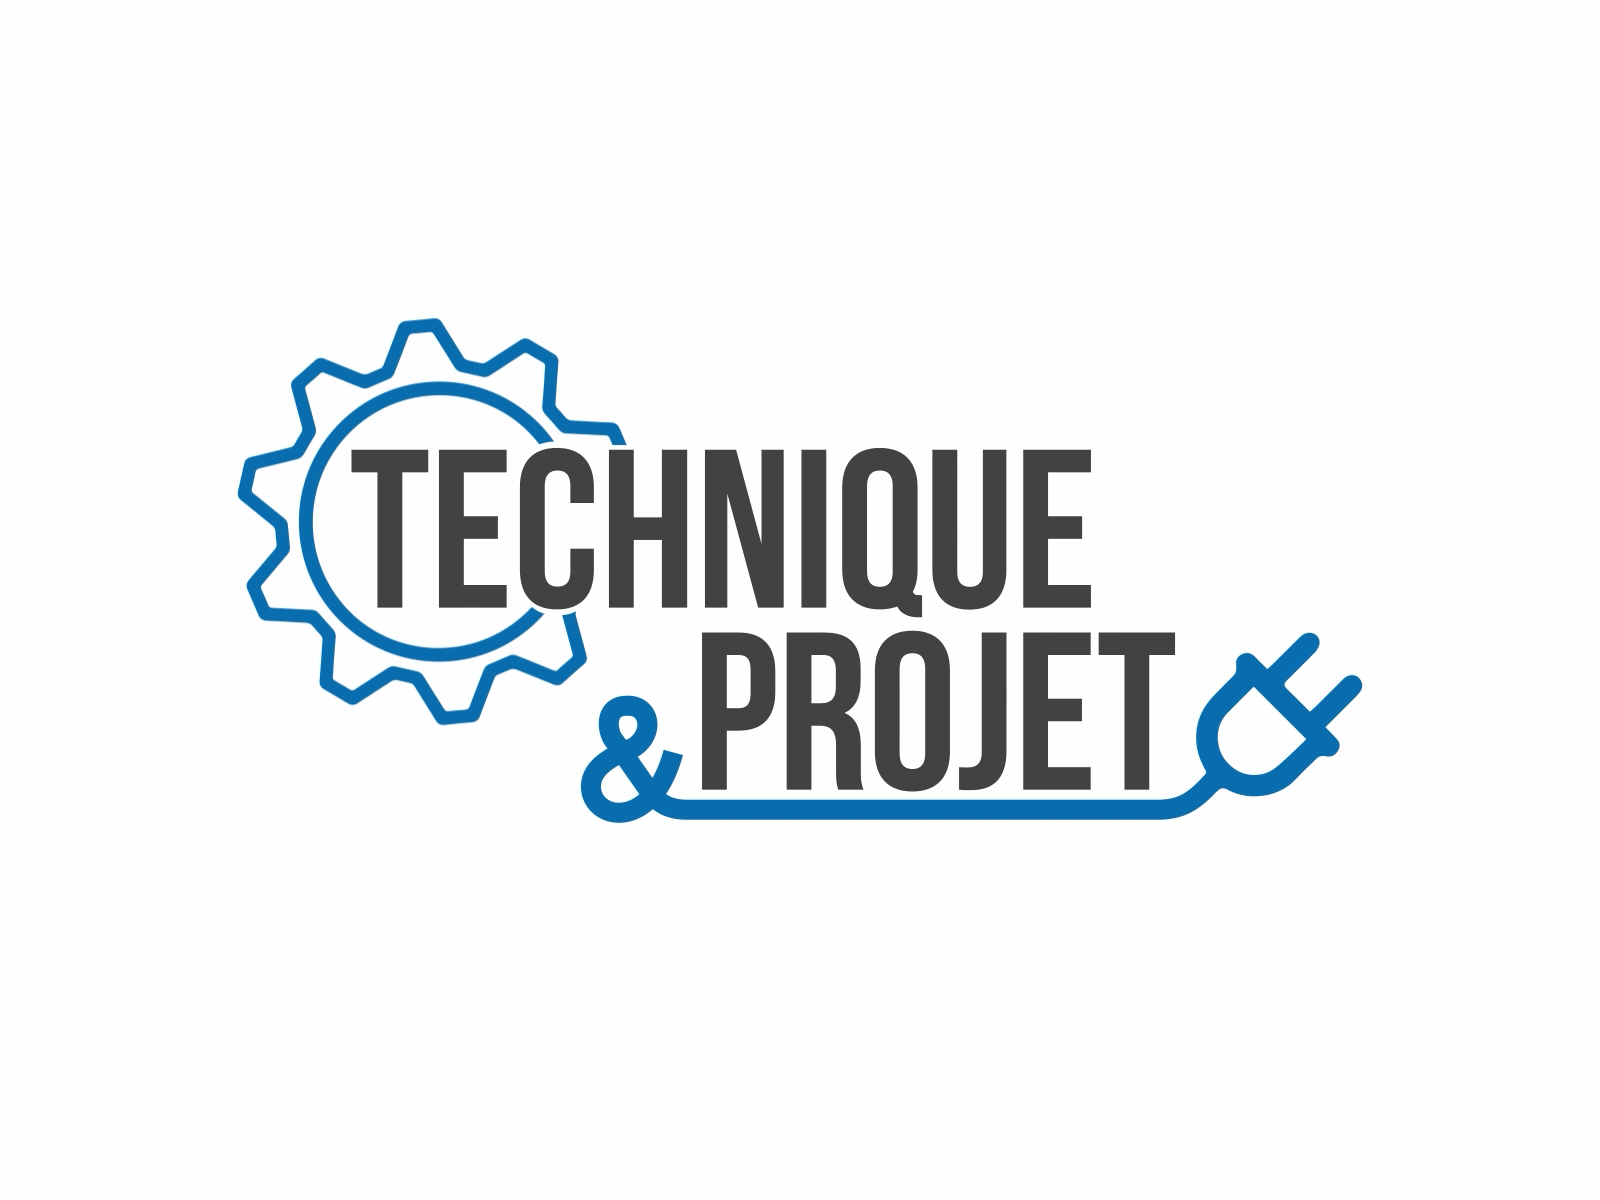 Technique Projet Icons